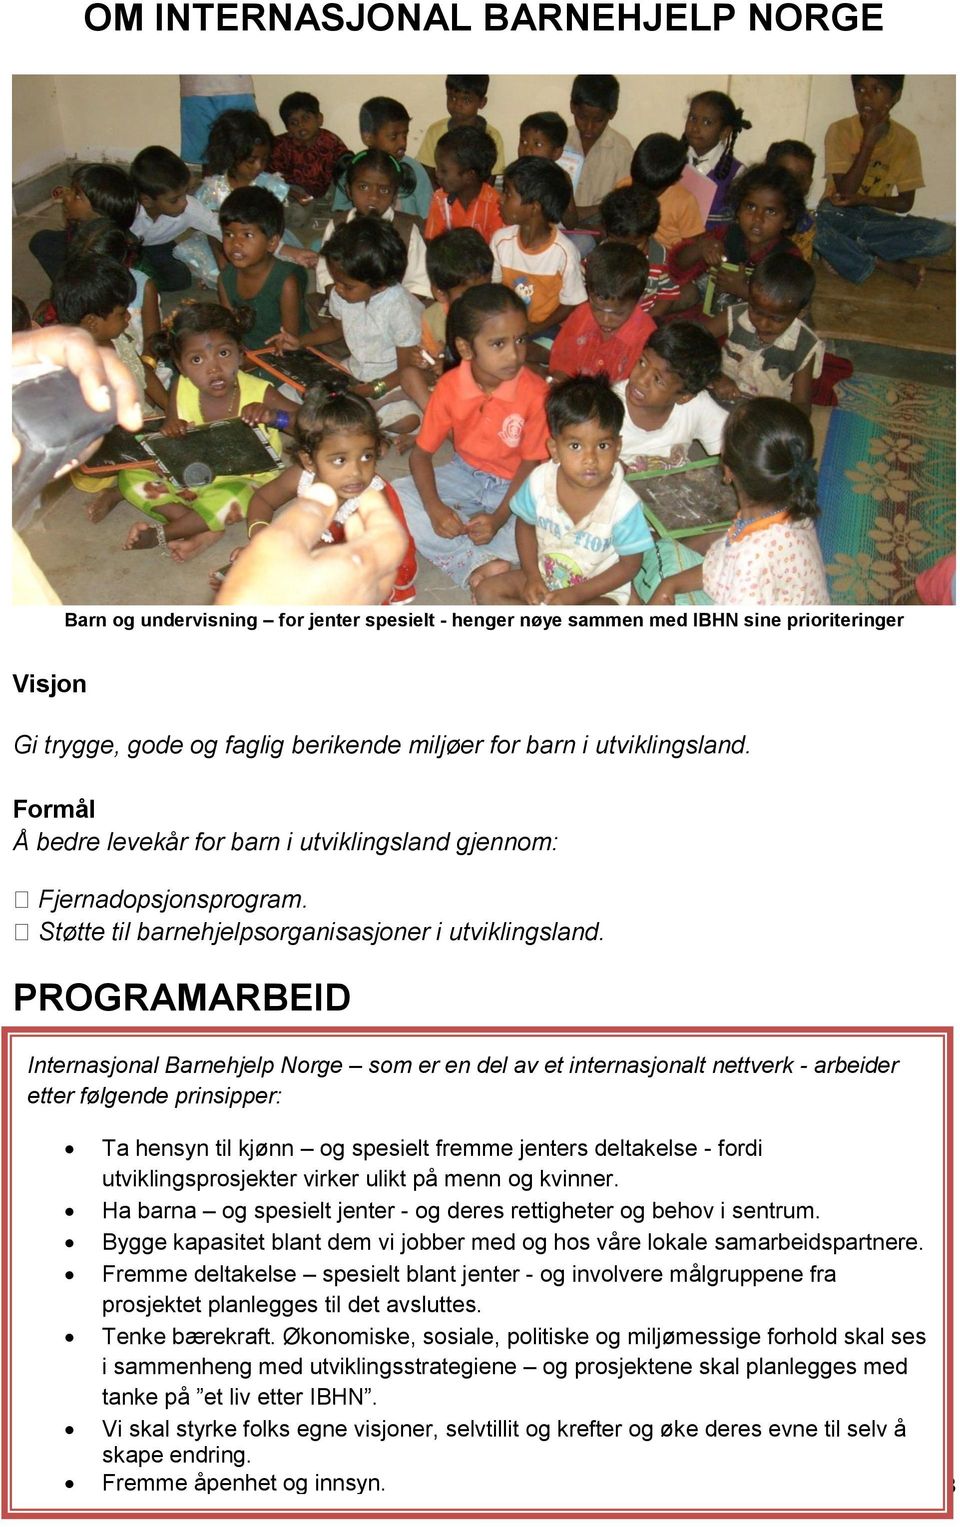 PROGRAMARBEID Internasjonal Barnehjelp Norge som er en del av et internasjonalt nettverk - arbeider etter følgende prinsipper: Ta hensyn til kjønn og spesielt fremme jenters deltakelse - fordi